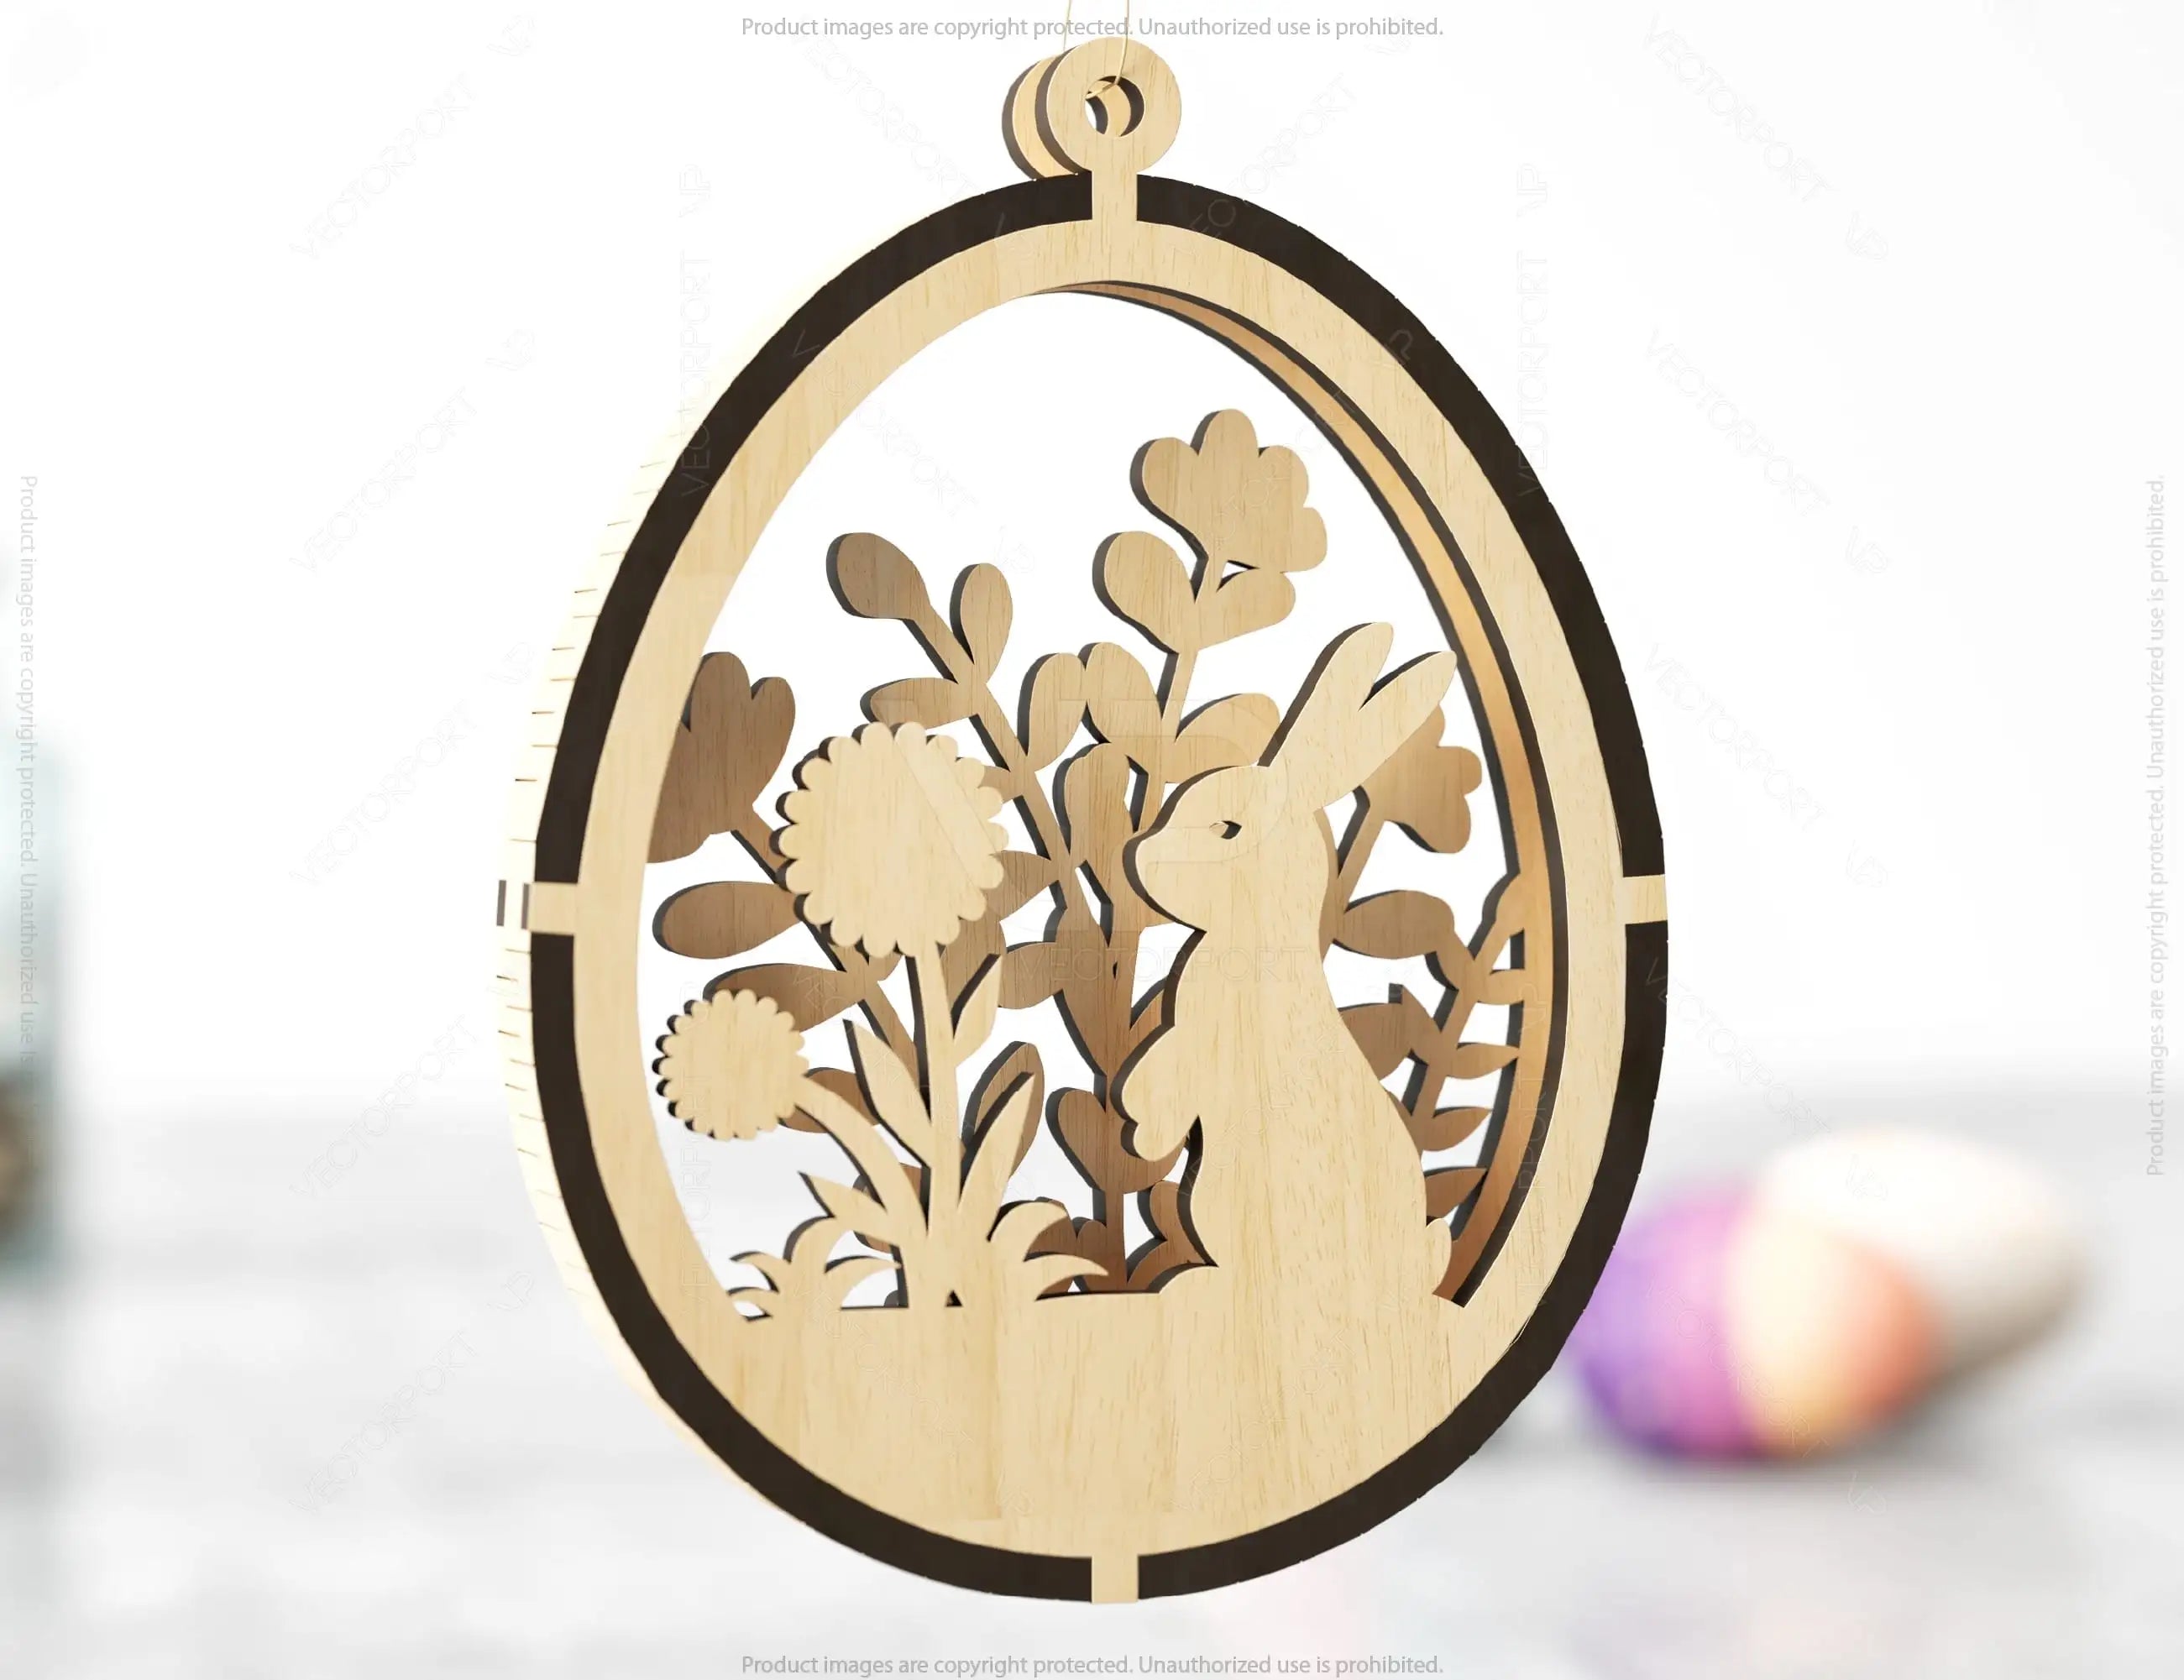 3D Easter Laser Cut Hanging Ornaments Egg Rabbits SVG layered Decor, Floral Bunny multilayer Digital Download |#U357|